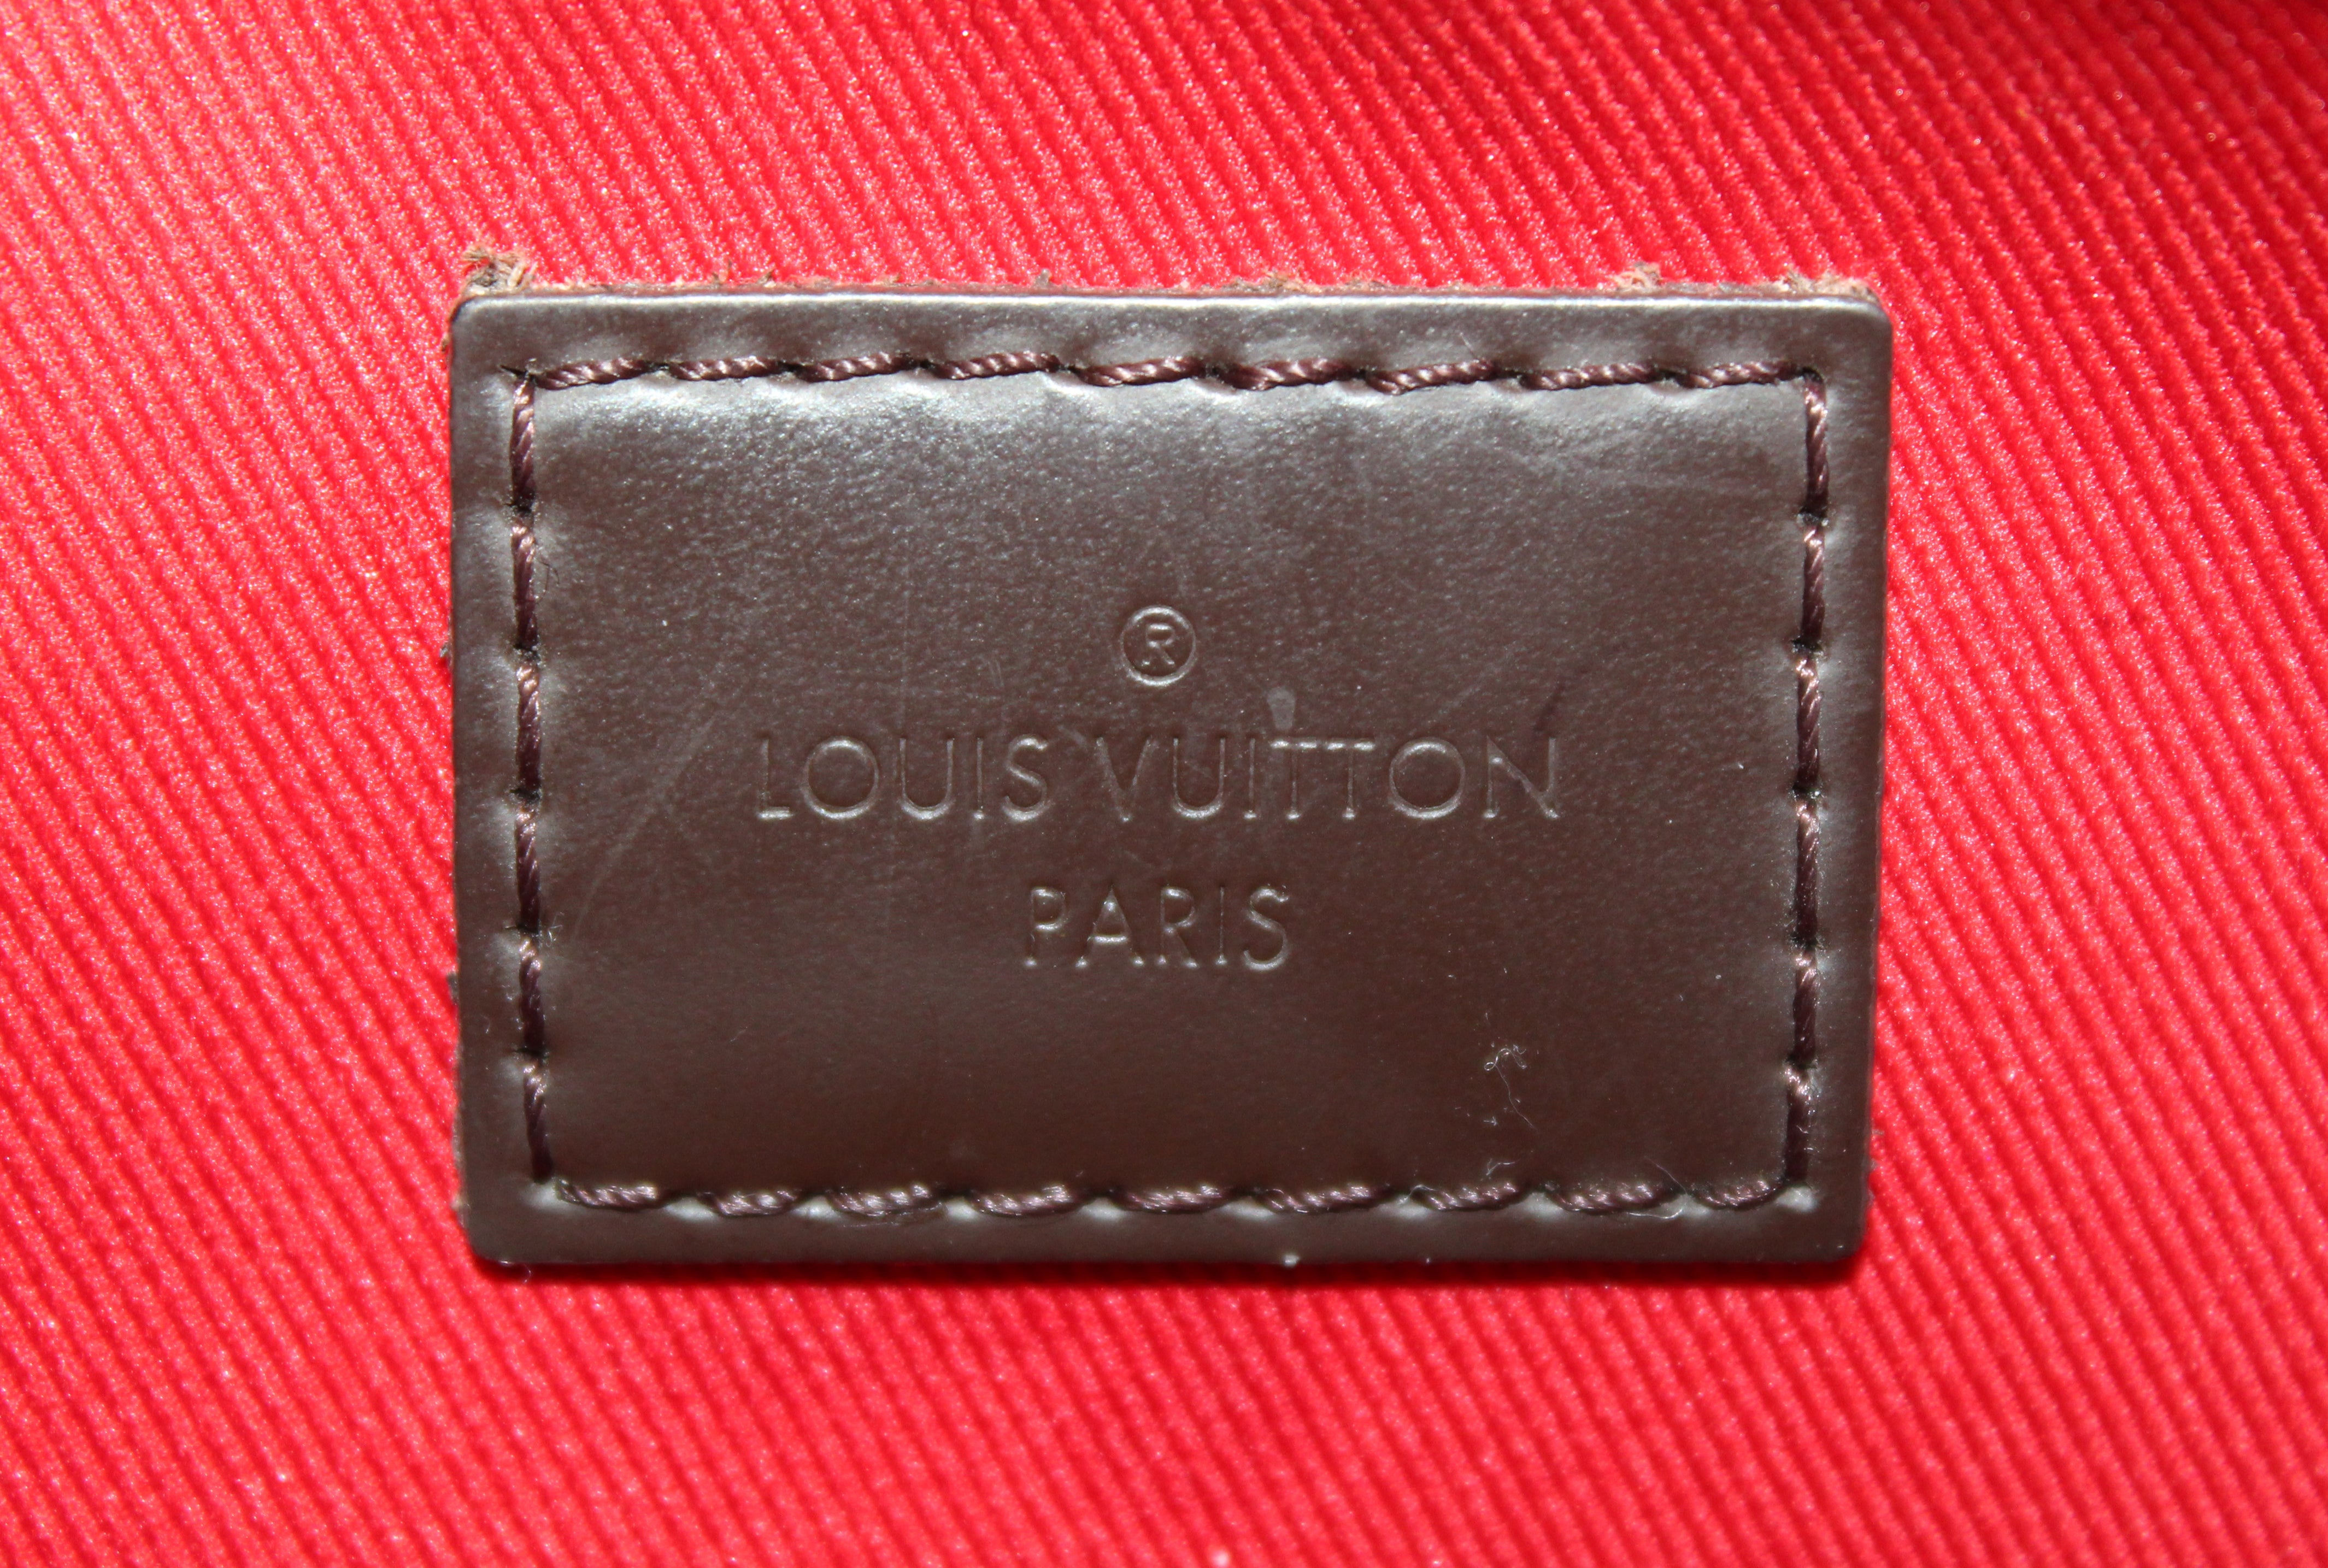 Authentic Louis Vuitton Damier Ebene Soth Bank Besace Messenger Bag